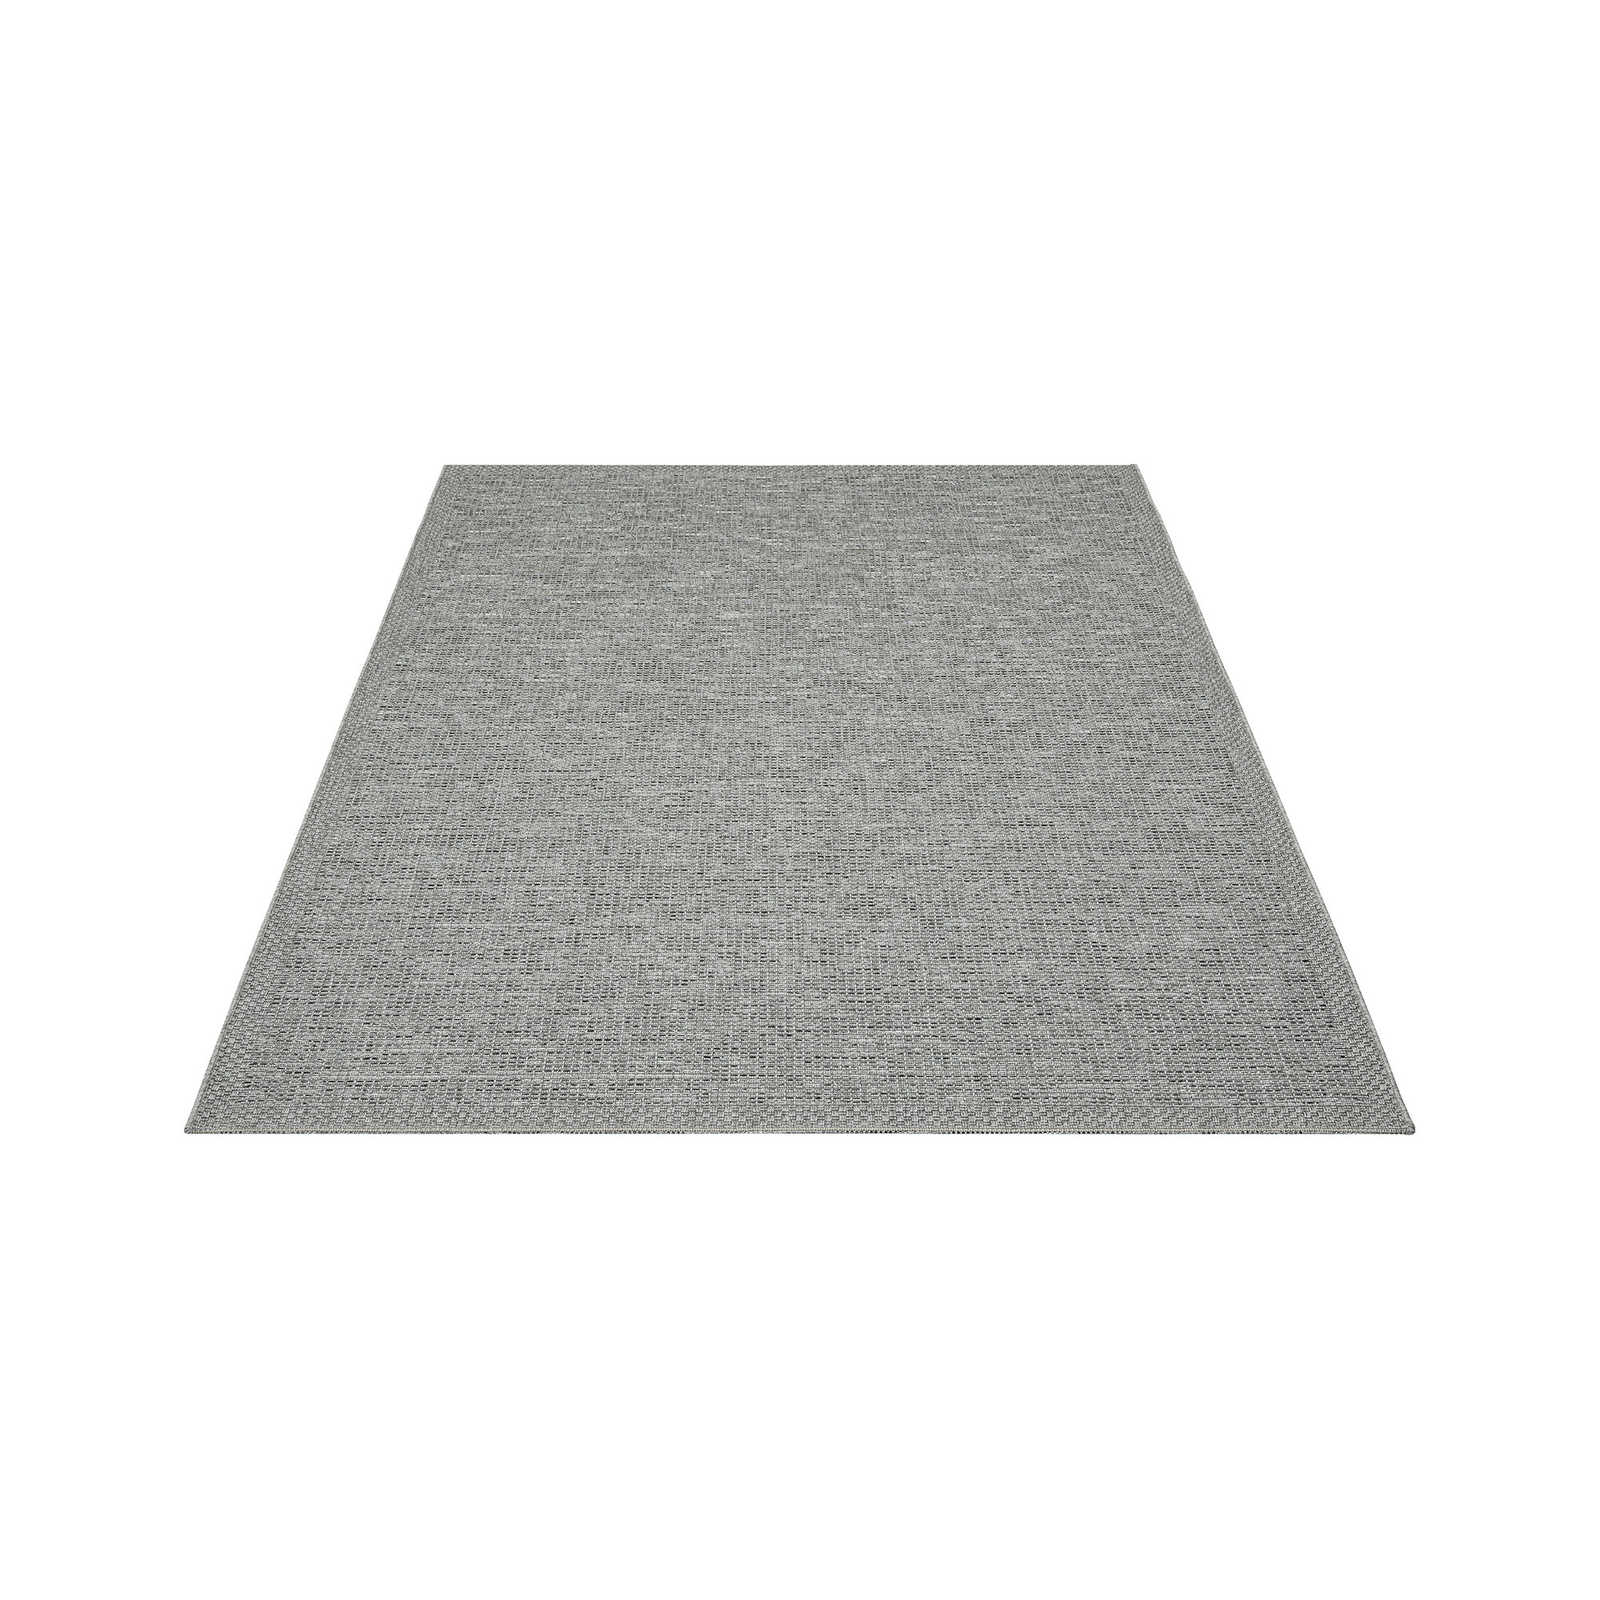 Tapis d'extérieur simple en gris - 220 x 160 cm
